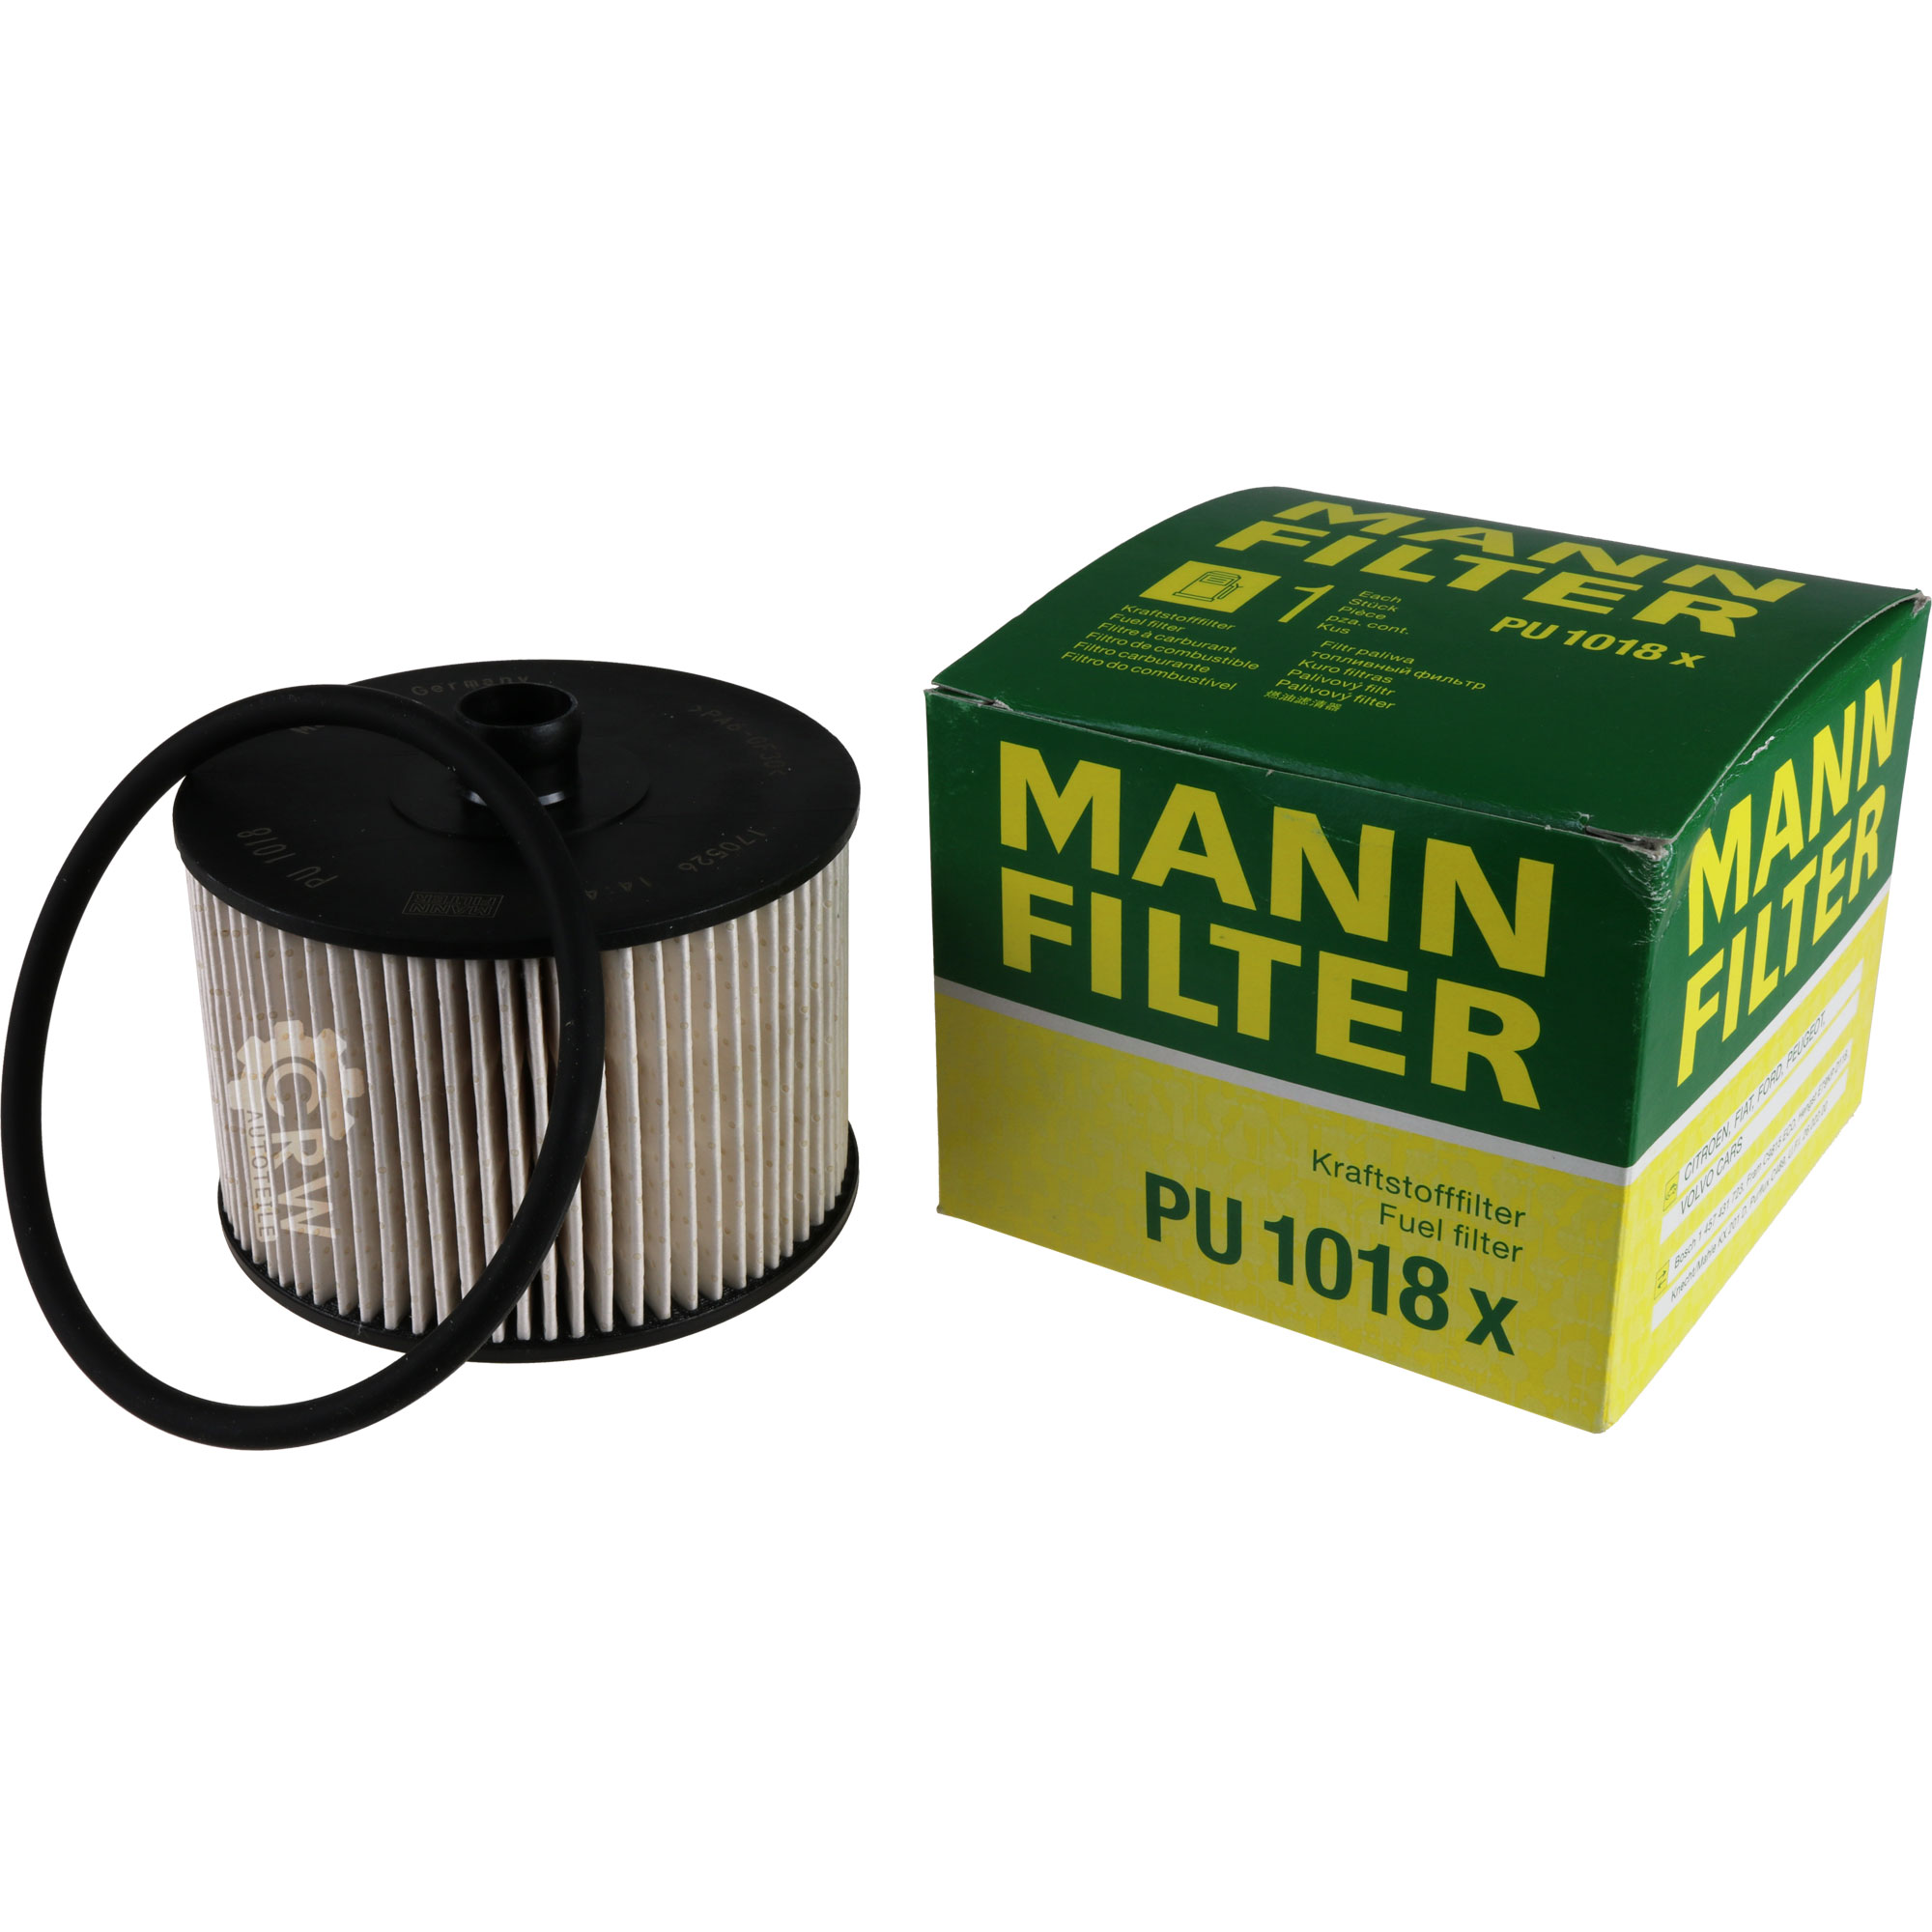 MANN-FILTER Kraftstofffilter PU 1018 x Fuel Filter